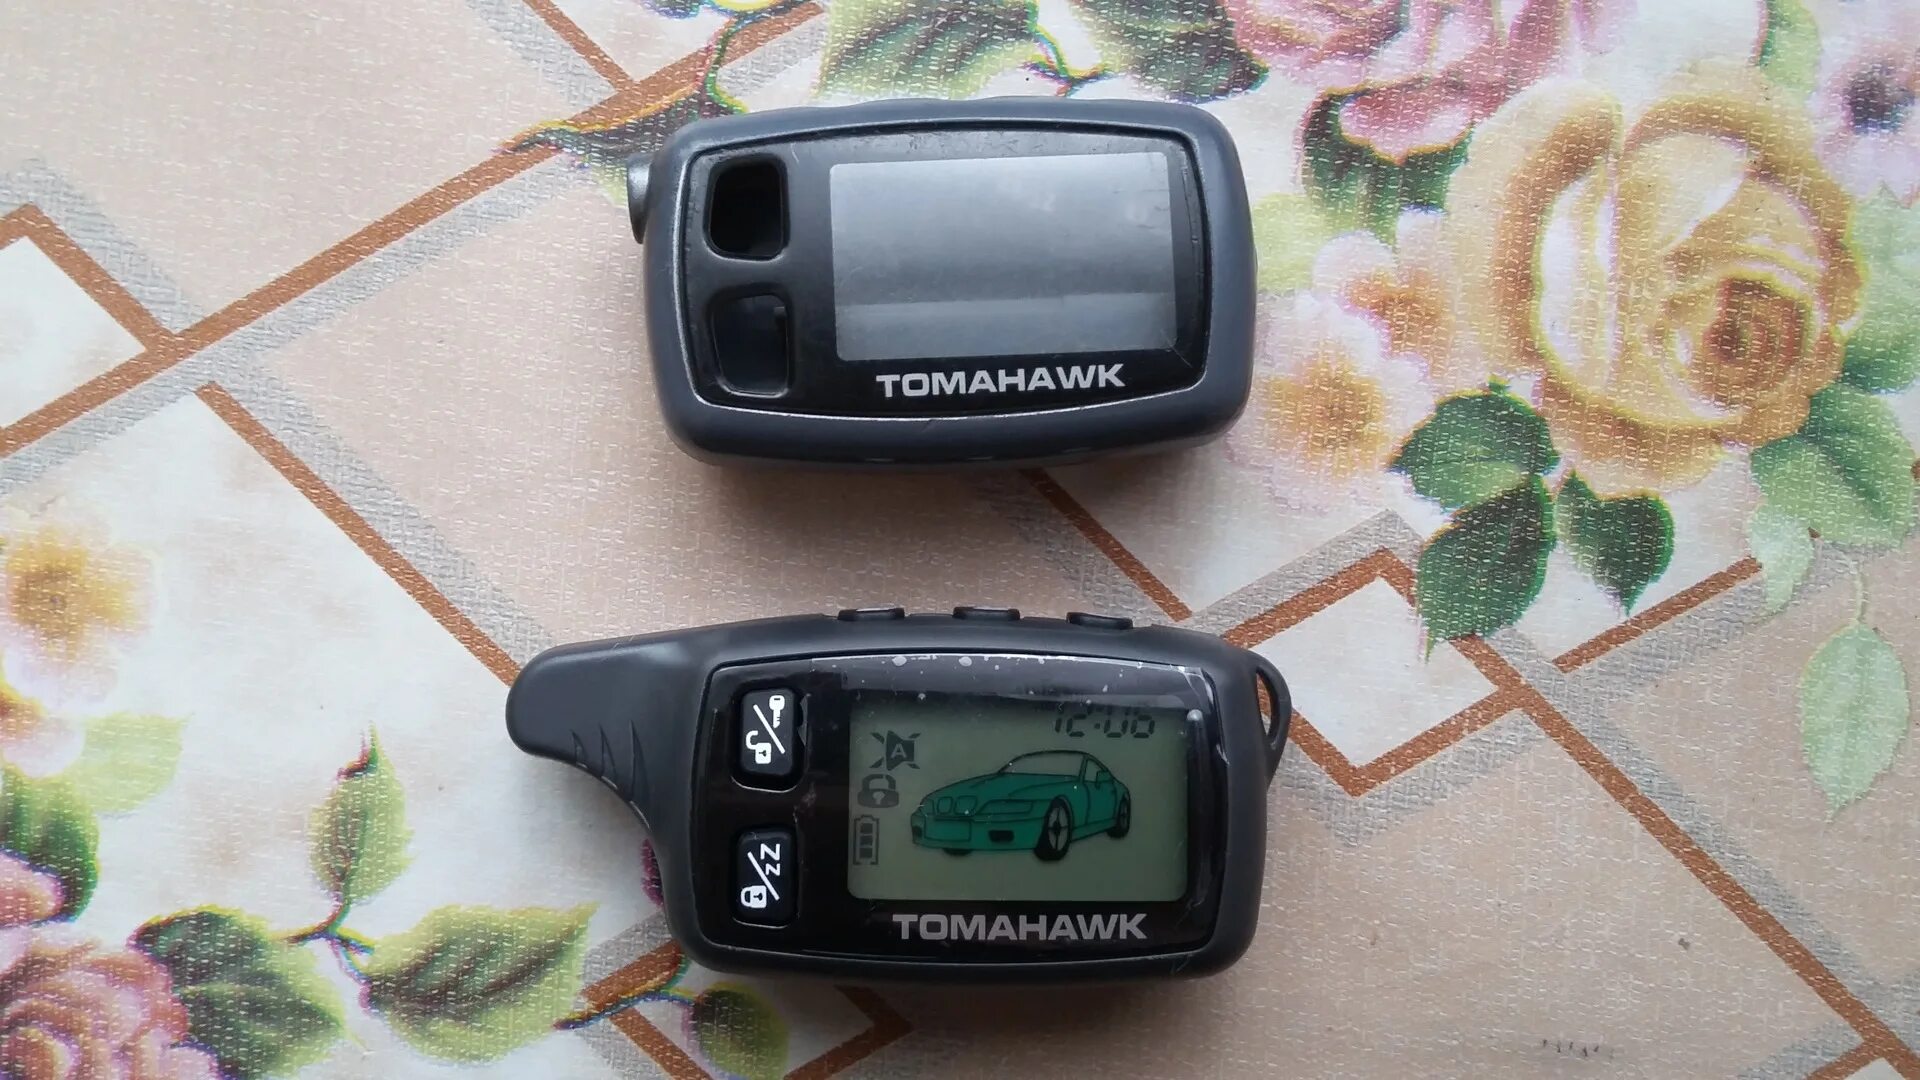 Tomahawk TW 9030. Сигнализация Tomahawk TW-9030. Брелок томагавк TW 9030. Брелок Tomahawk TW-9030.